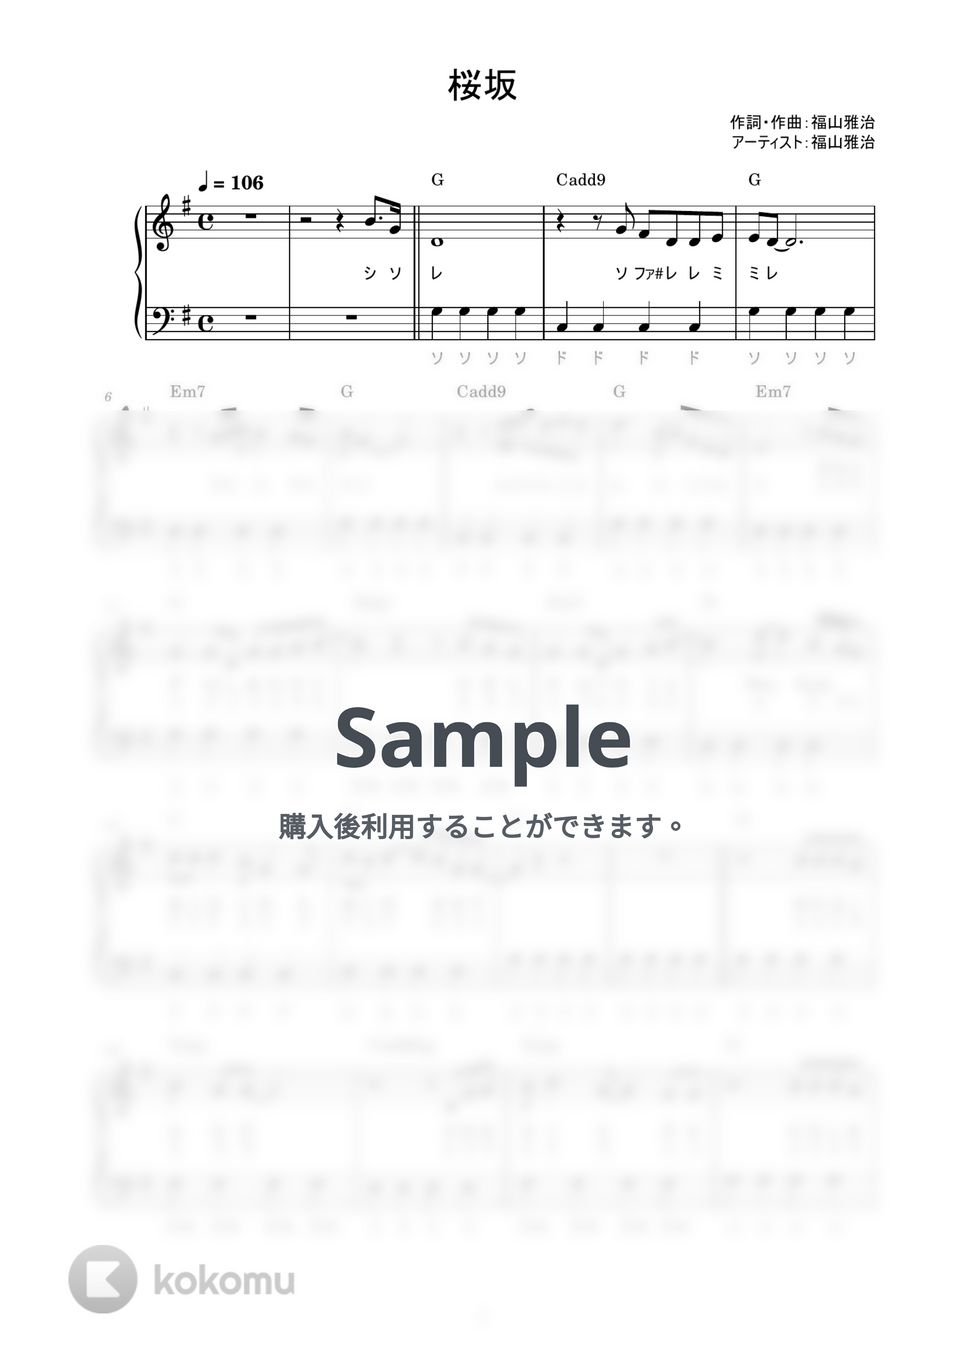 福山雅治 - 桜坂 (かんたん / 歌詞付き / ドレミ付き / 初心者) by piano.tokyo